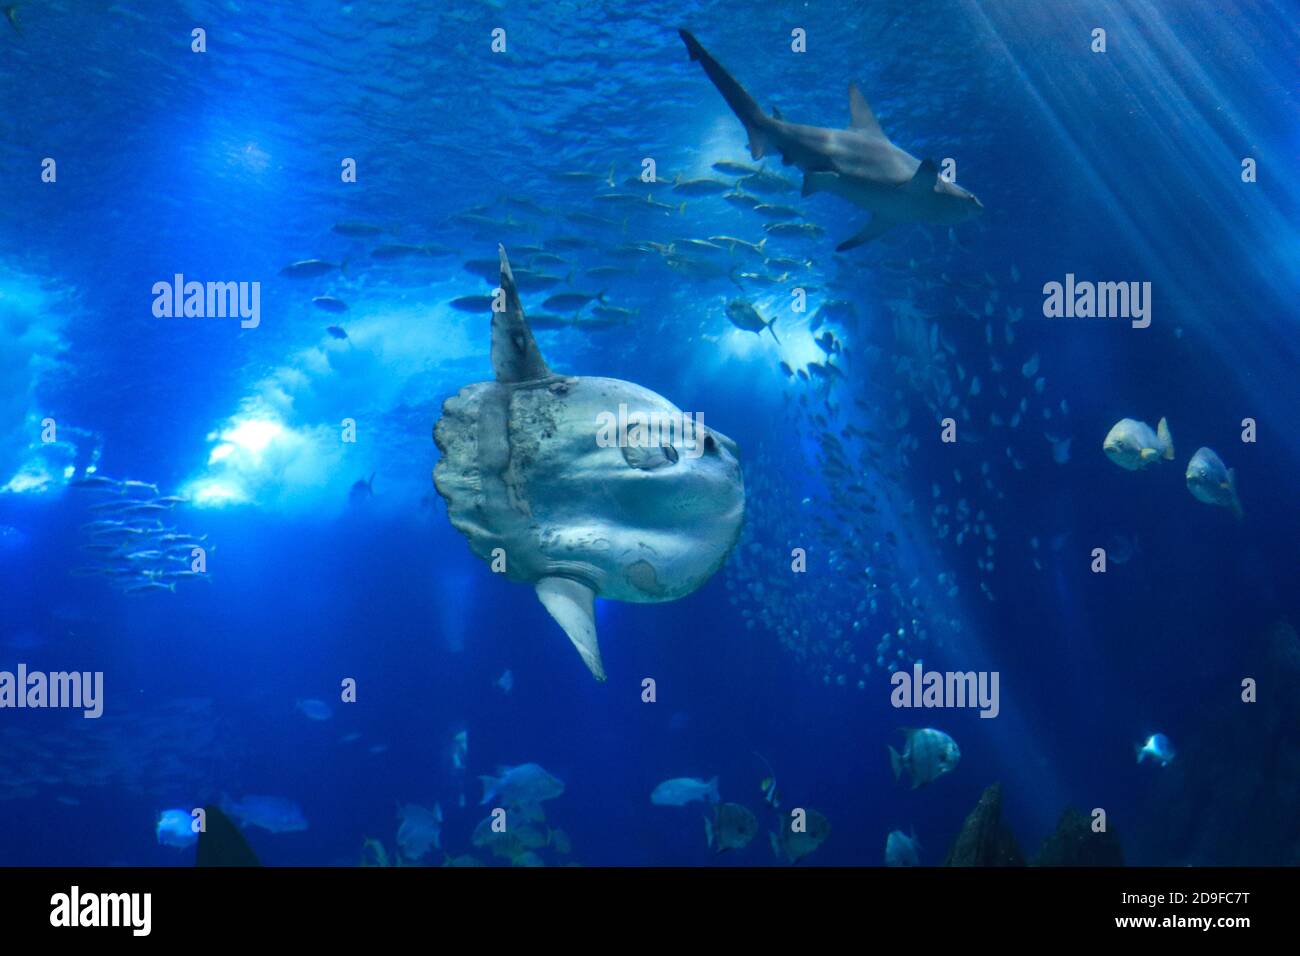 Mondfisch (Mondfisch) schwimmt im blauen Meerwasser Stockfoto